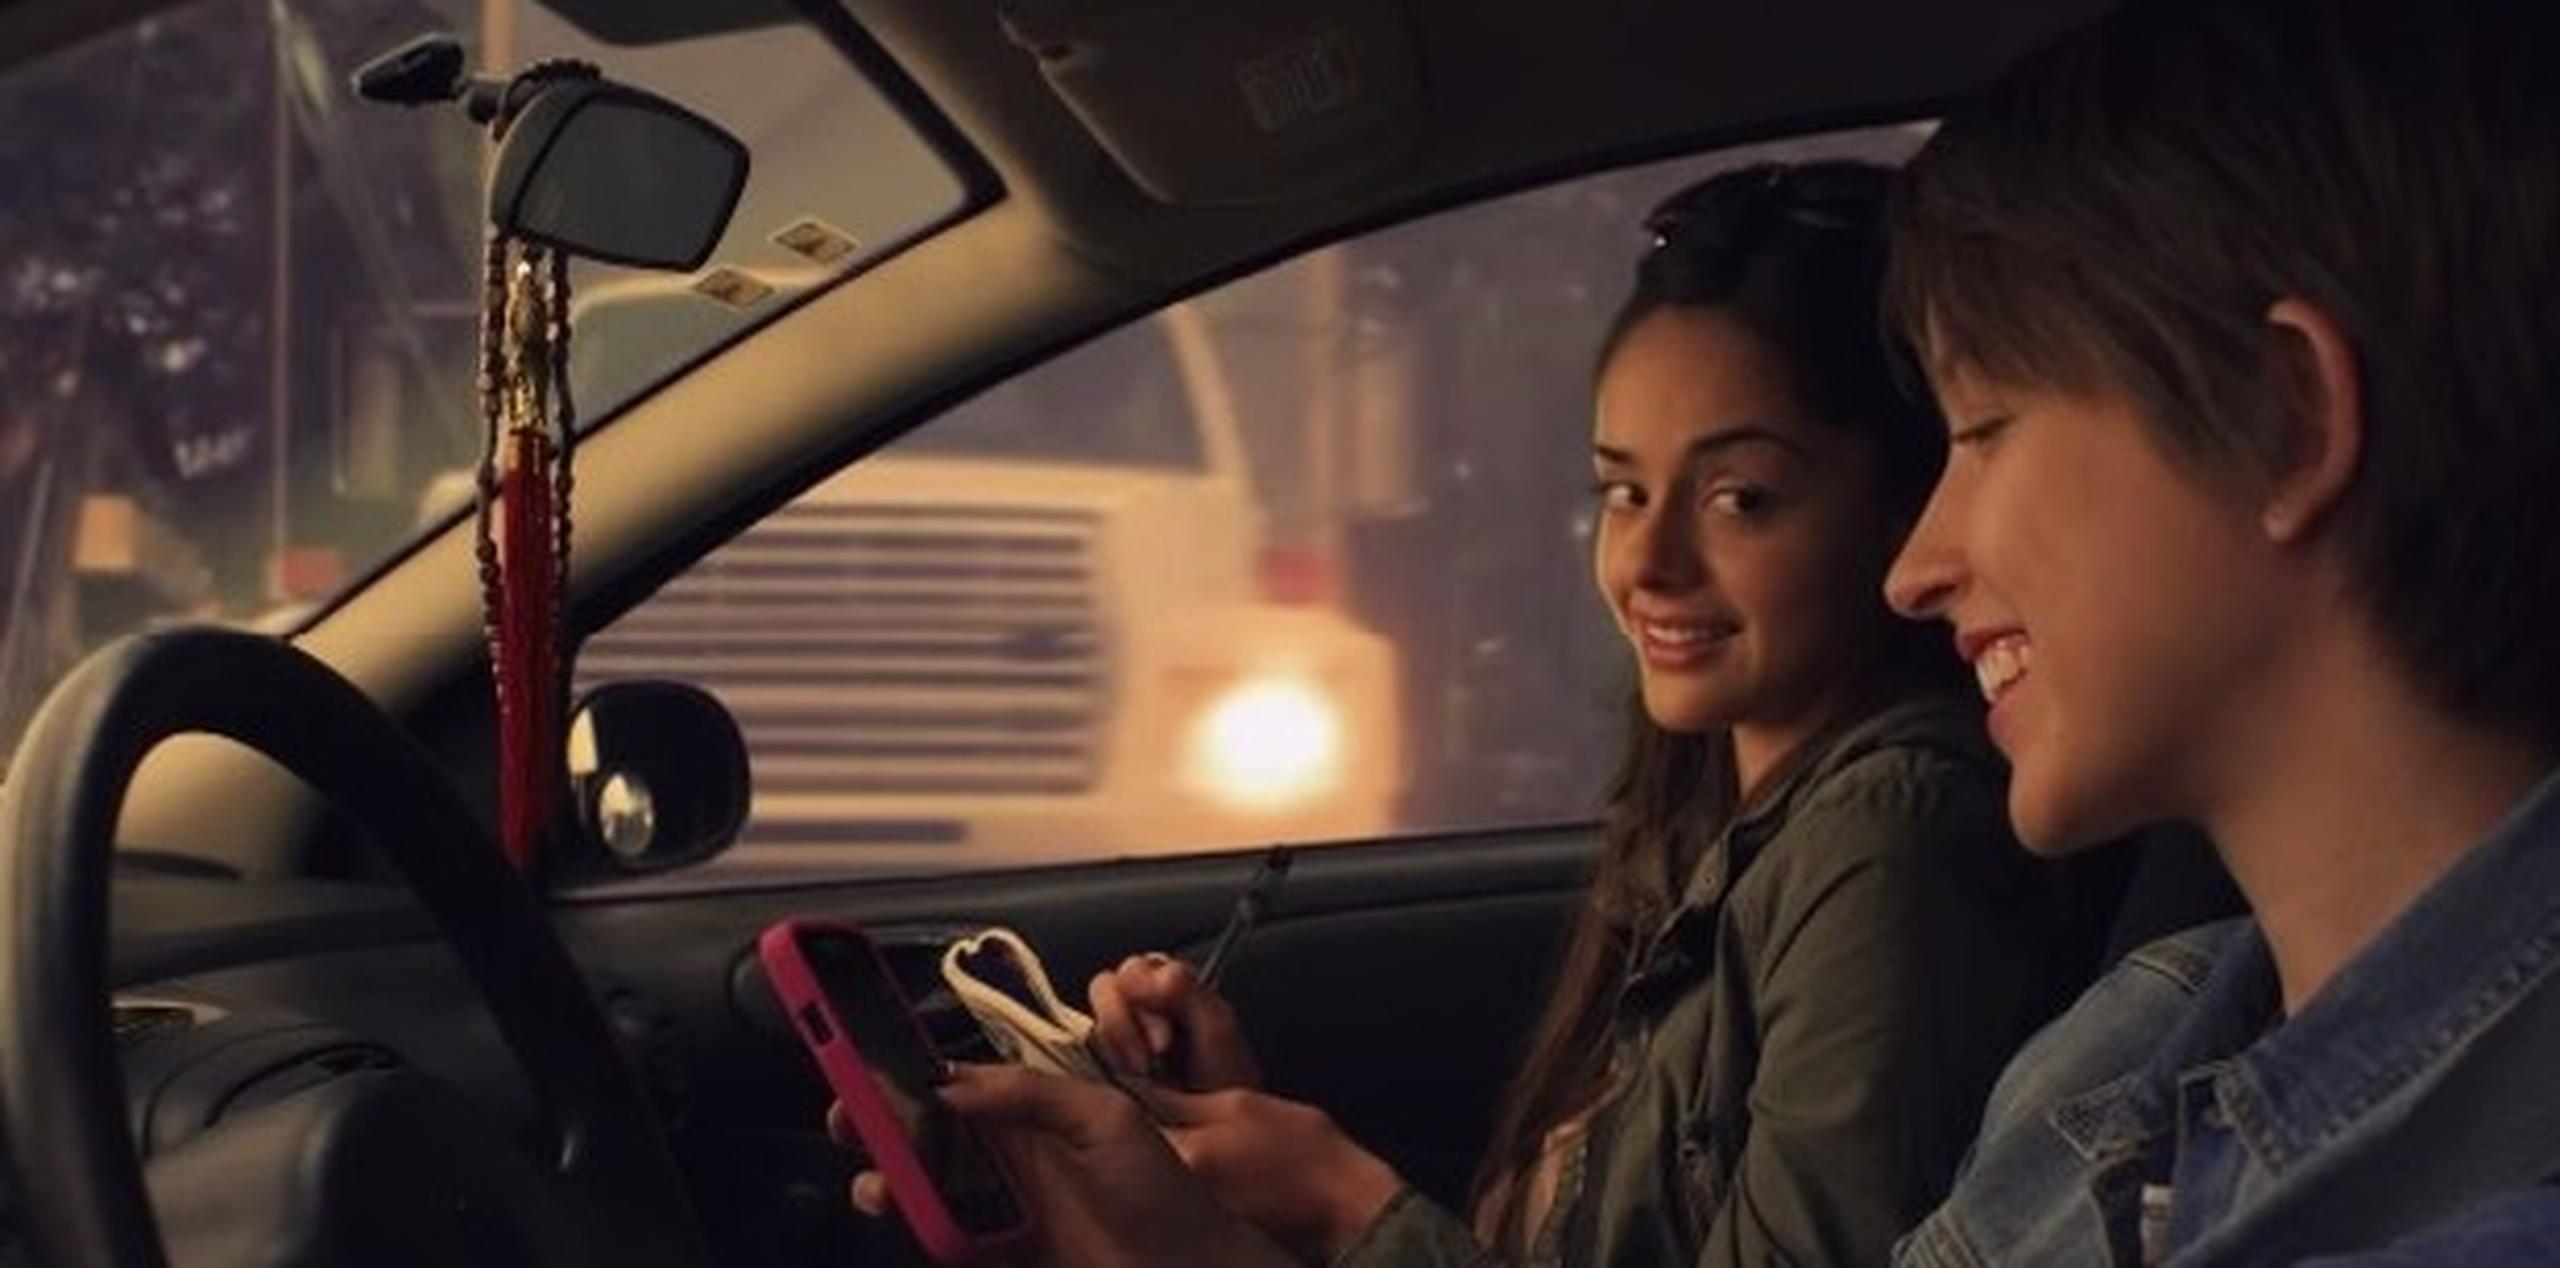 El anuncio de 30 segundos muestra una escena con la que muchos conductores podrían identificarse: una joven "da una ojeada" a su celular mientras conduce su auto. (Captura)